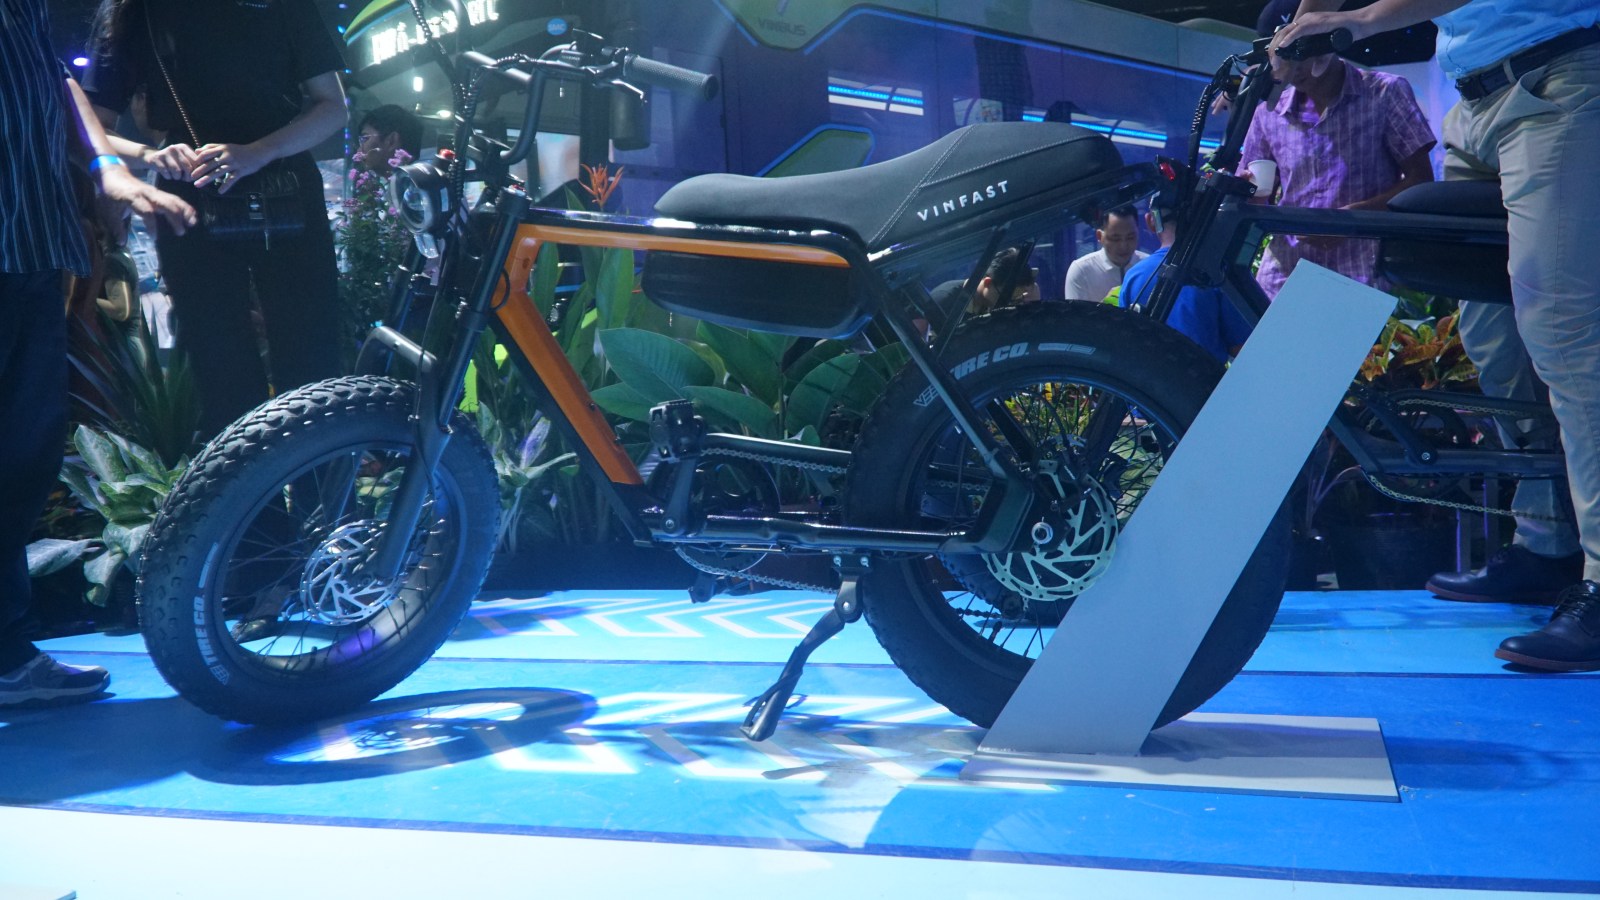 VinFast lần đầu ra mắt xe đạp điện: Dáng xe máy, tốc độ 32 km/h, pin có thể tháo rời - Ảnh 3.